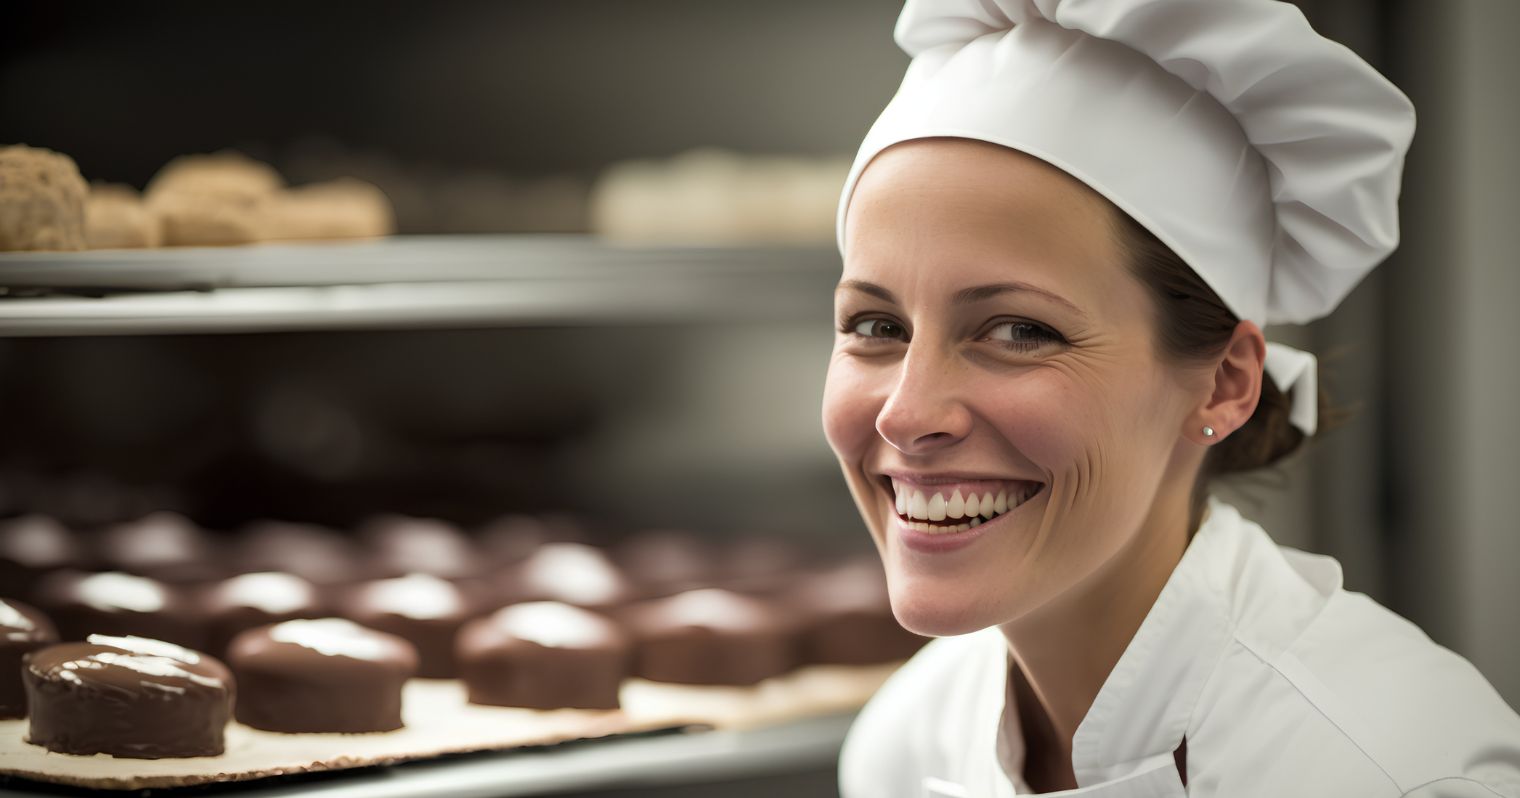 Sütő- és cukrászipari technikus mosolyog a kamerába egyenruhában, mellette frissen sült sütemények sorakoznak.